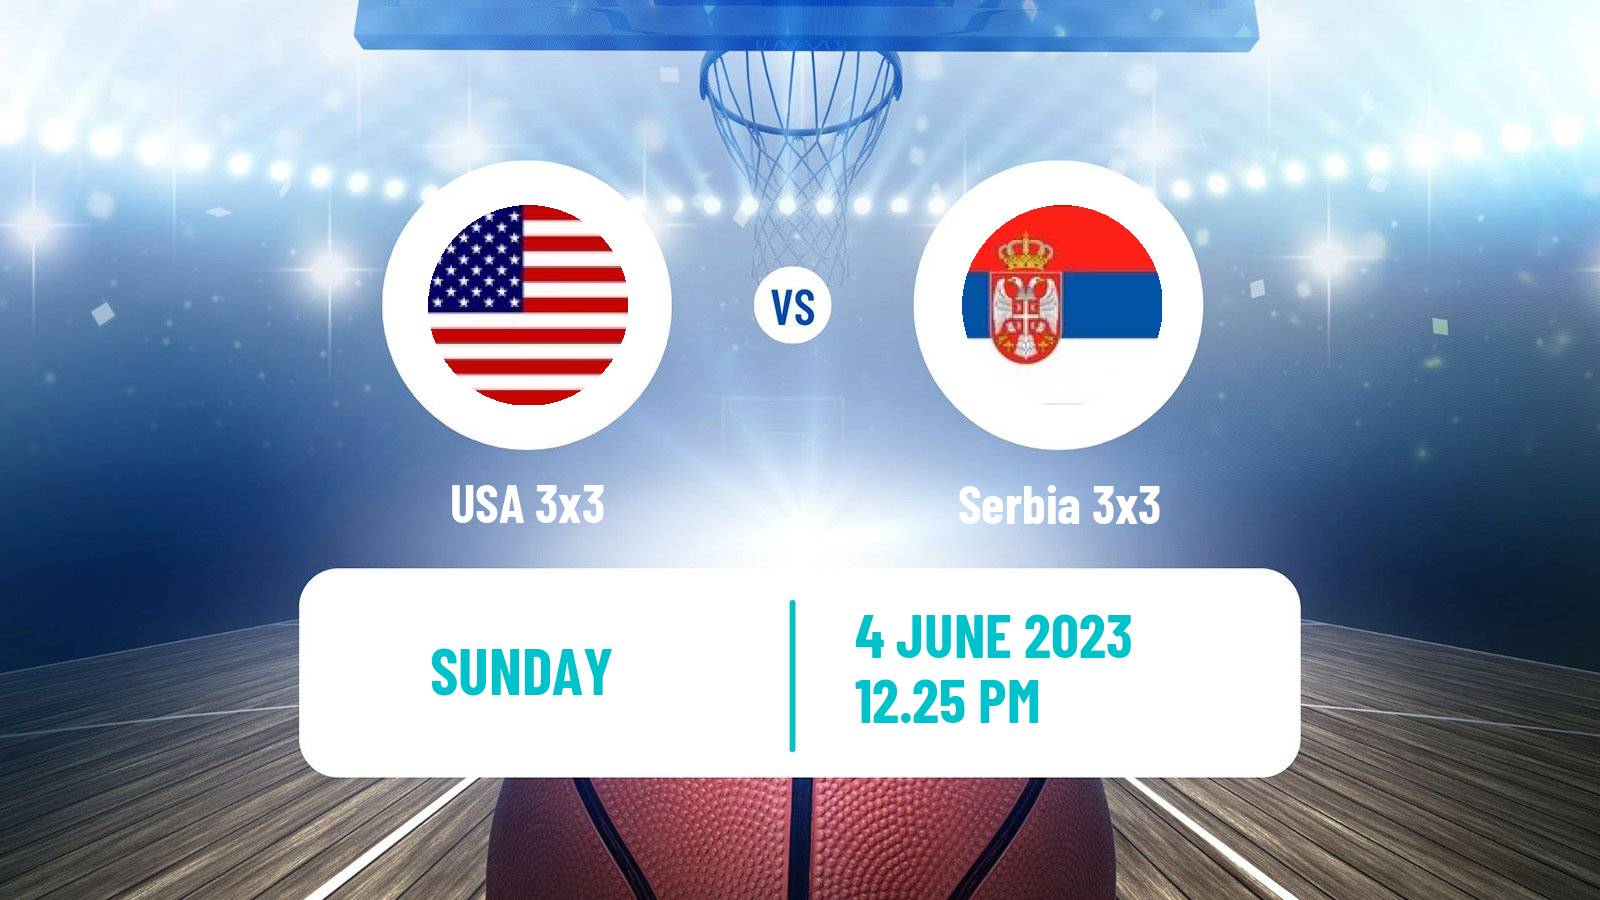 Basketball World Cup Basketball 3x3 USA 3x3 - Serbia 3x3